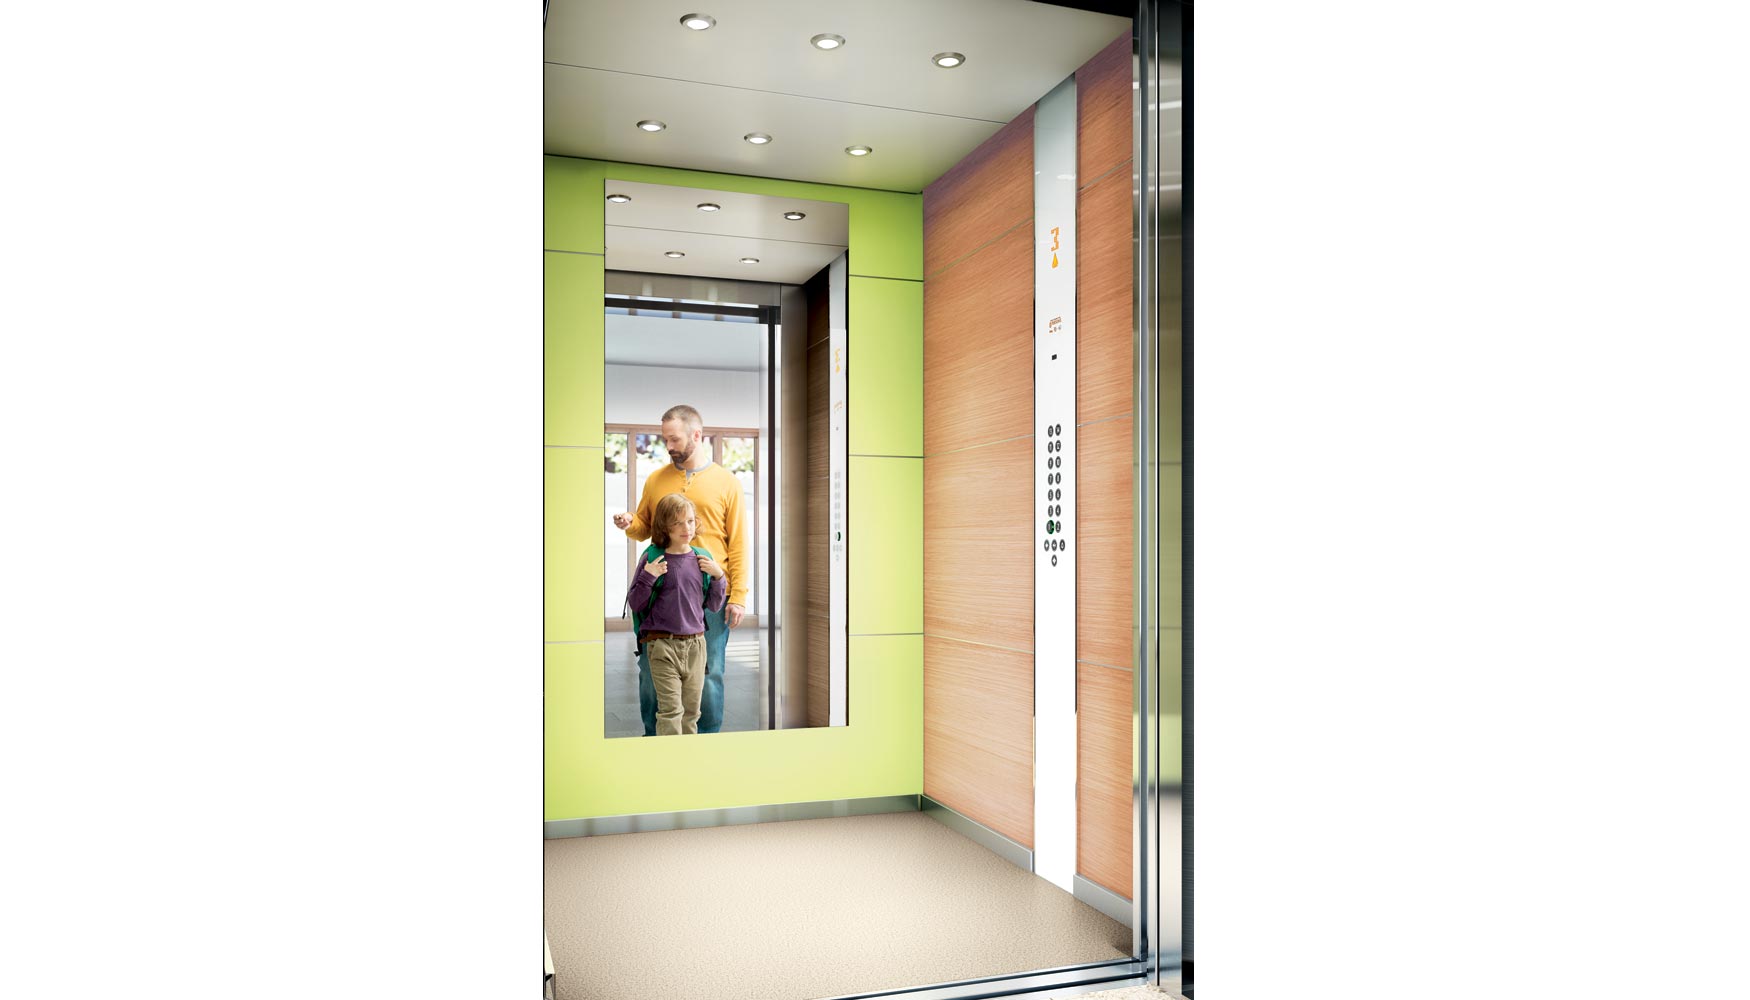 La legislacin obliga a las empresas instaladoras a garantizar que todos los ascensores cumplen con los requisitos de seguridad establecidos...